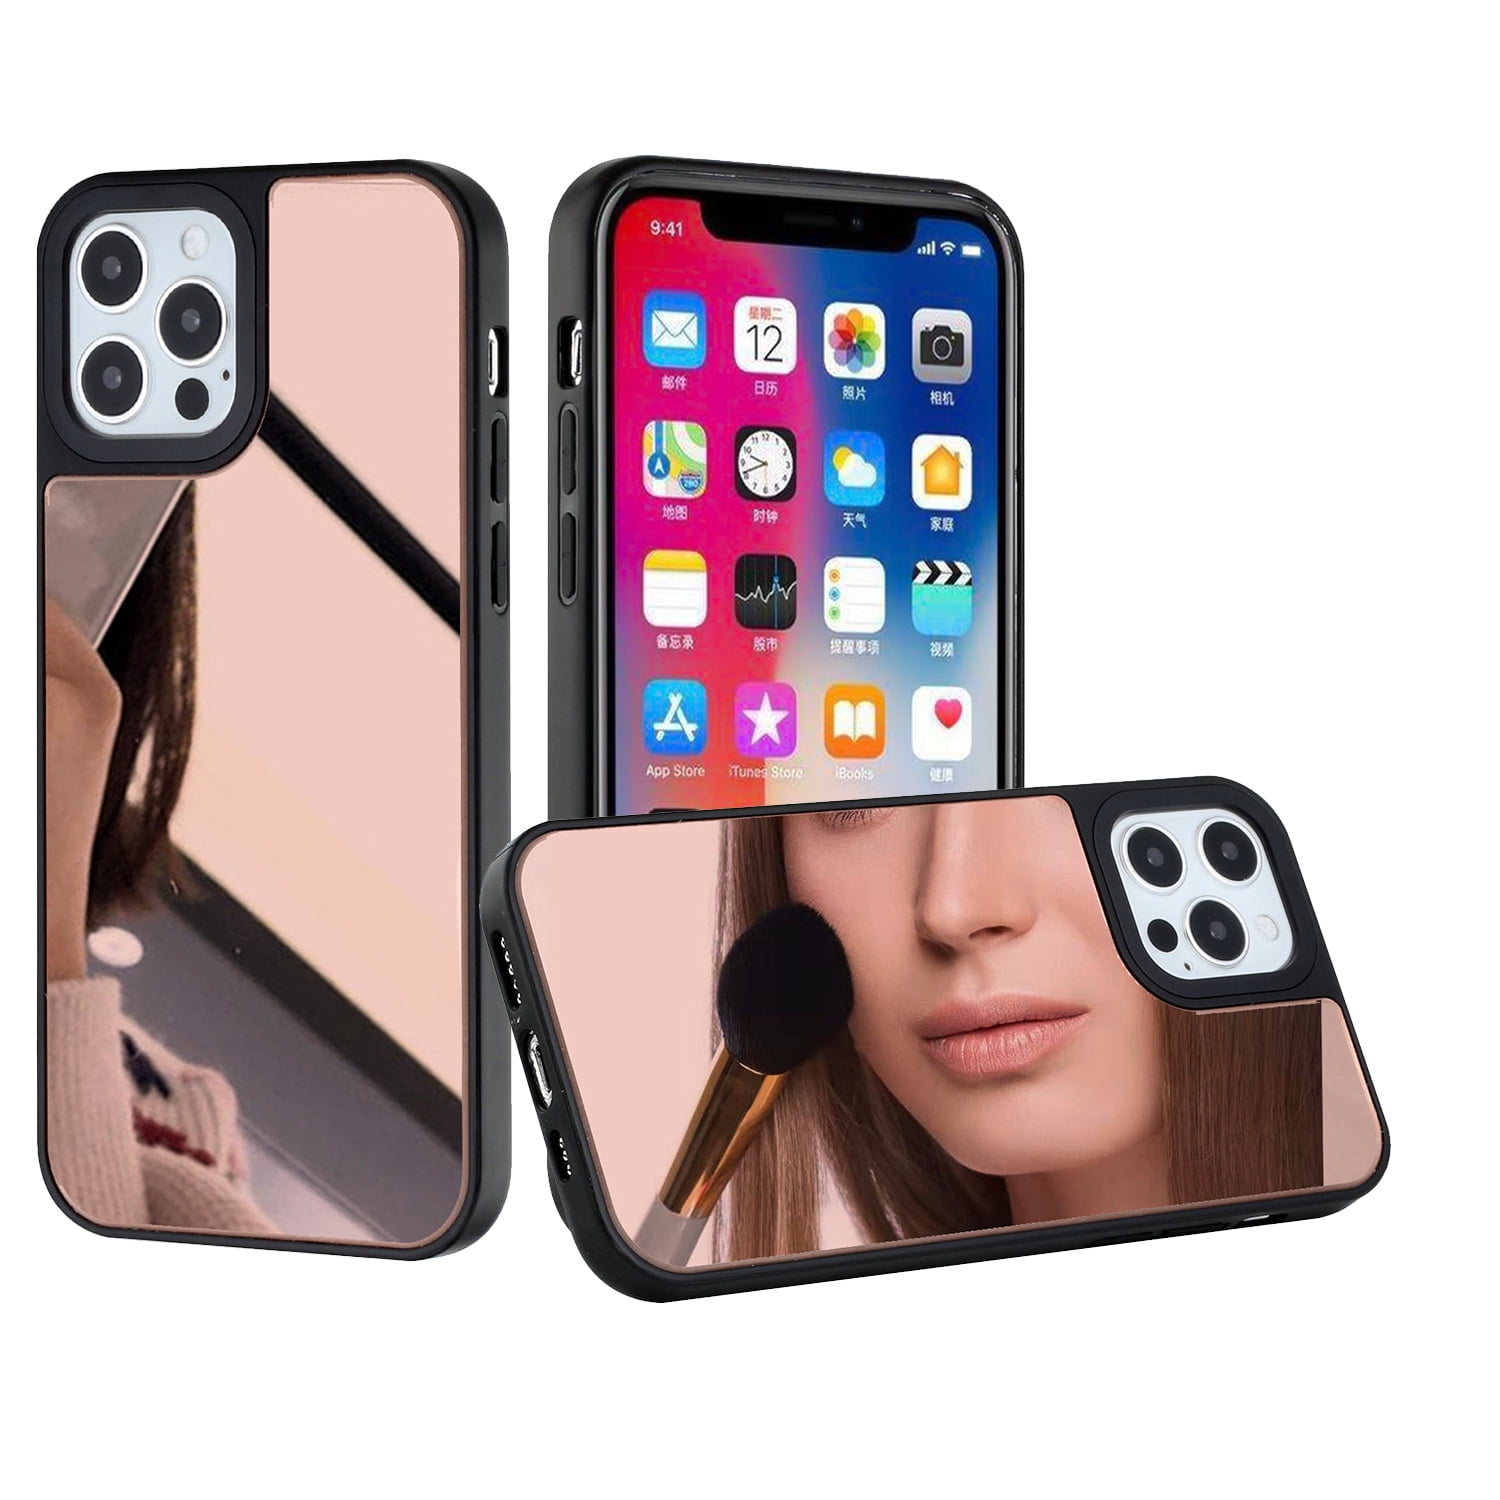 Rose Mirror iPhone Case